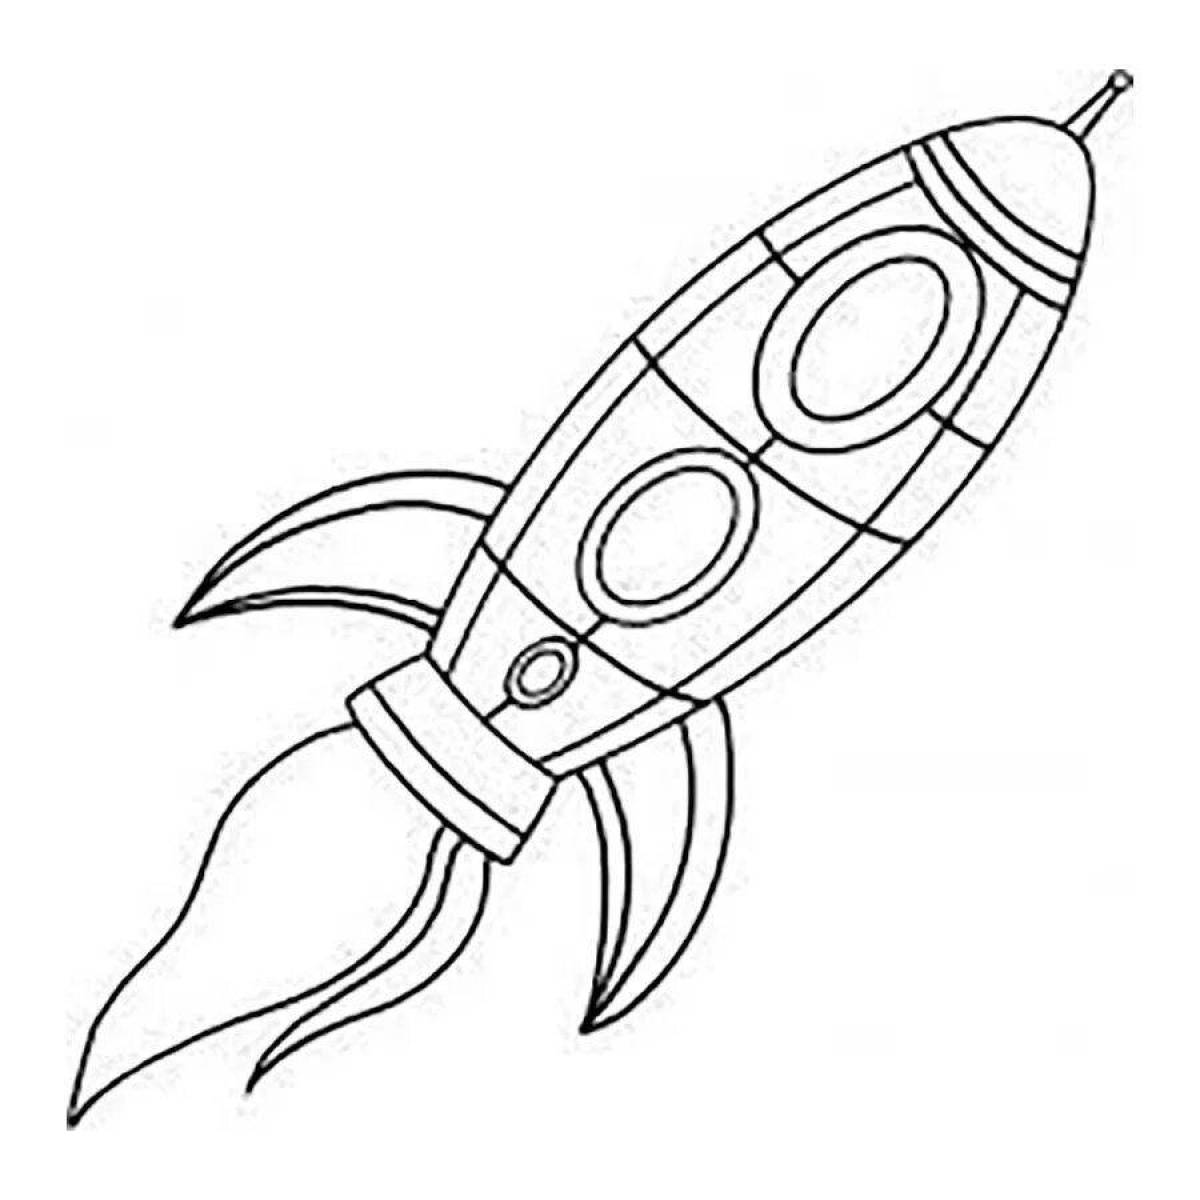 Ракета рисунок: векторные изображения и иллюстрации, которые можно скачать бесплатно | Freepik